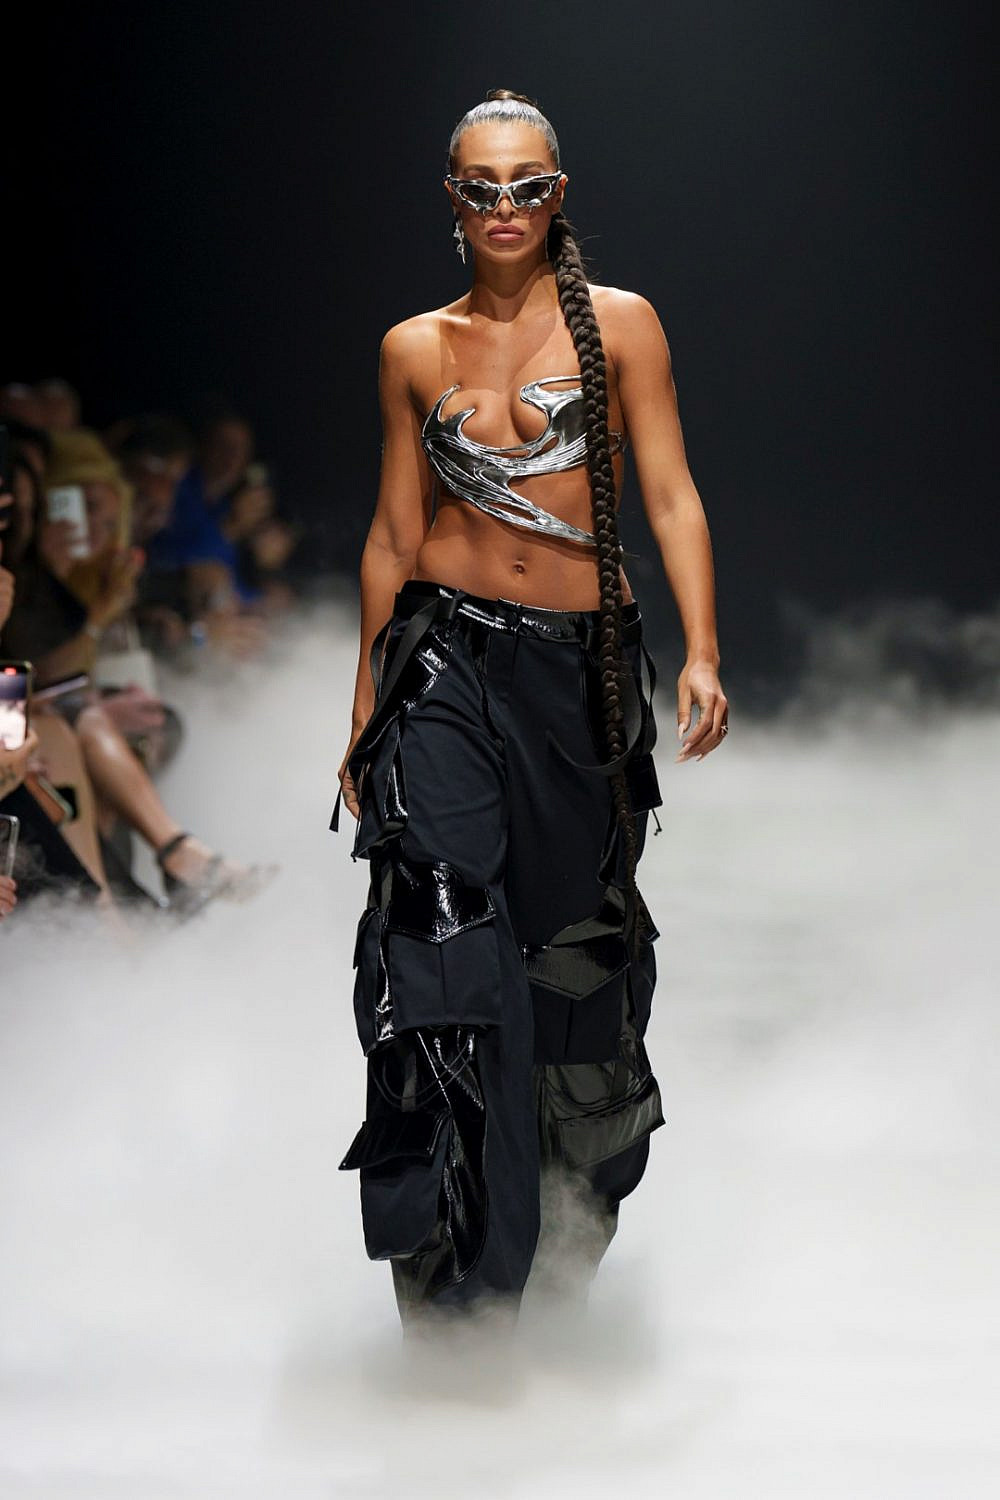 עדן פינס פותחת את תצוגת אלון ליבנה בשבוע האופנה קורנית FAC תל אביב 2023 | צילום: Haydon Perrior haydonperrior